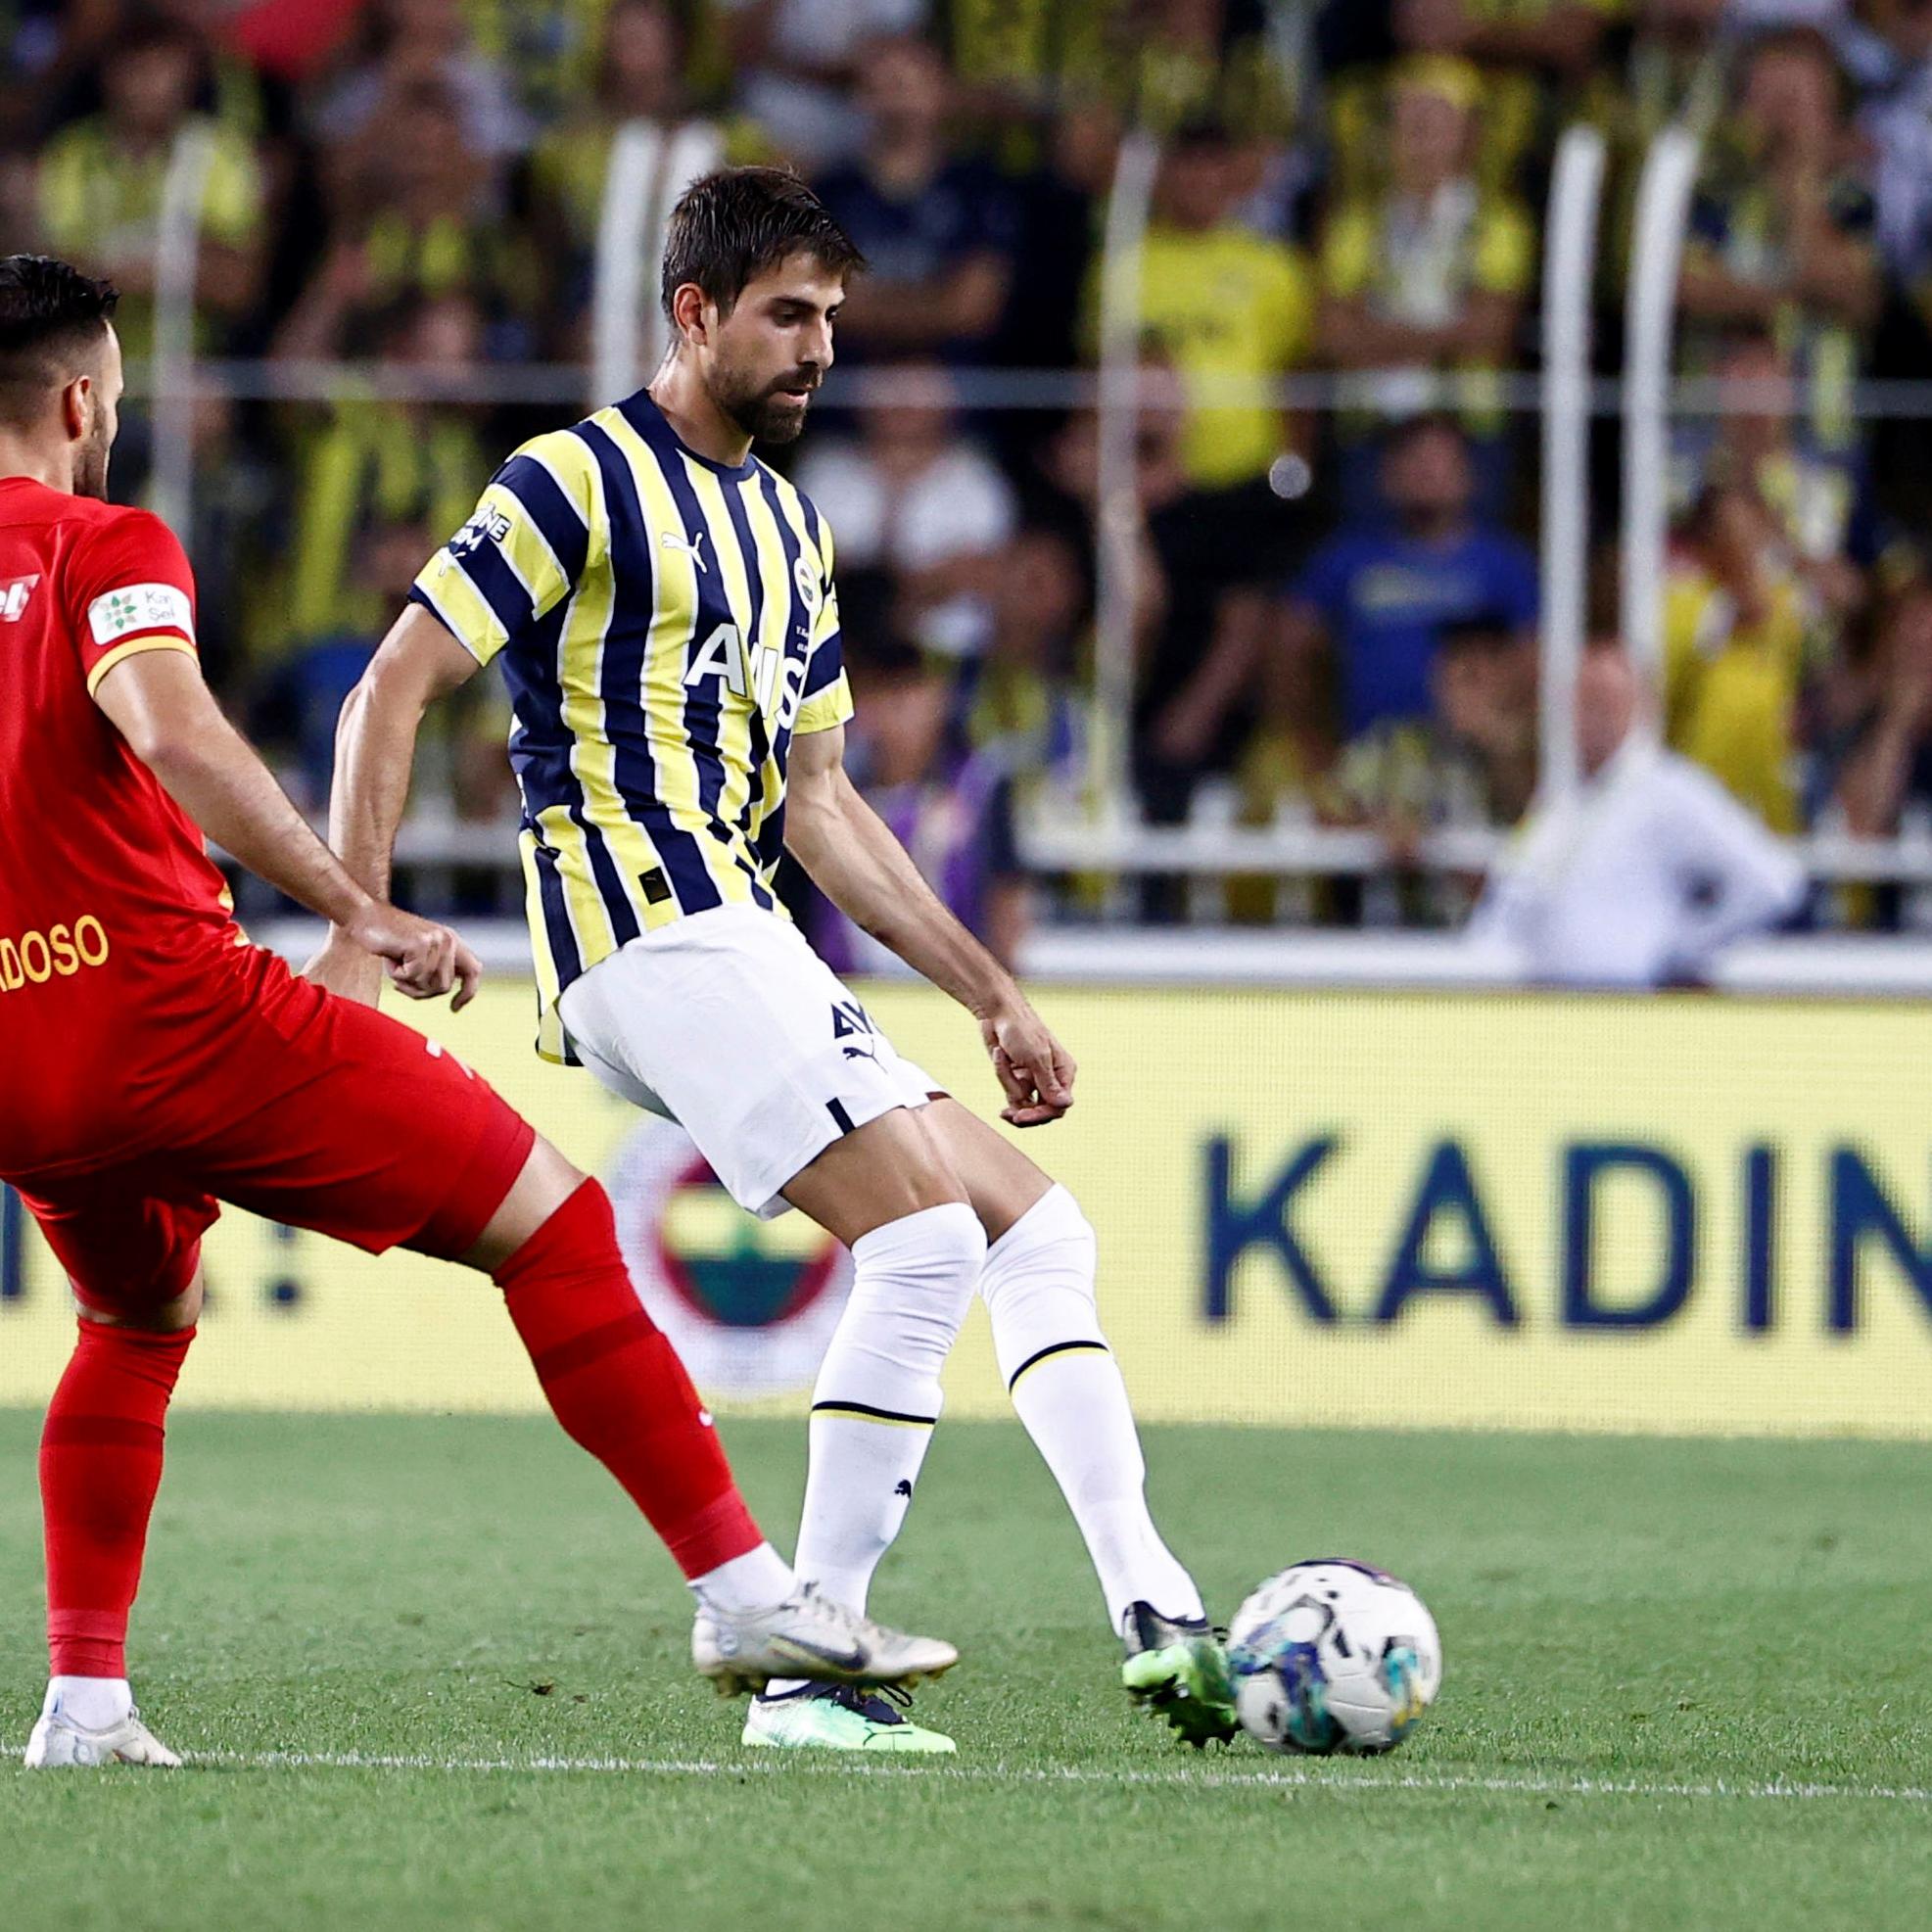 Fenerbahçe FC: A Legendary Football Club in Turkey